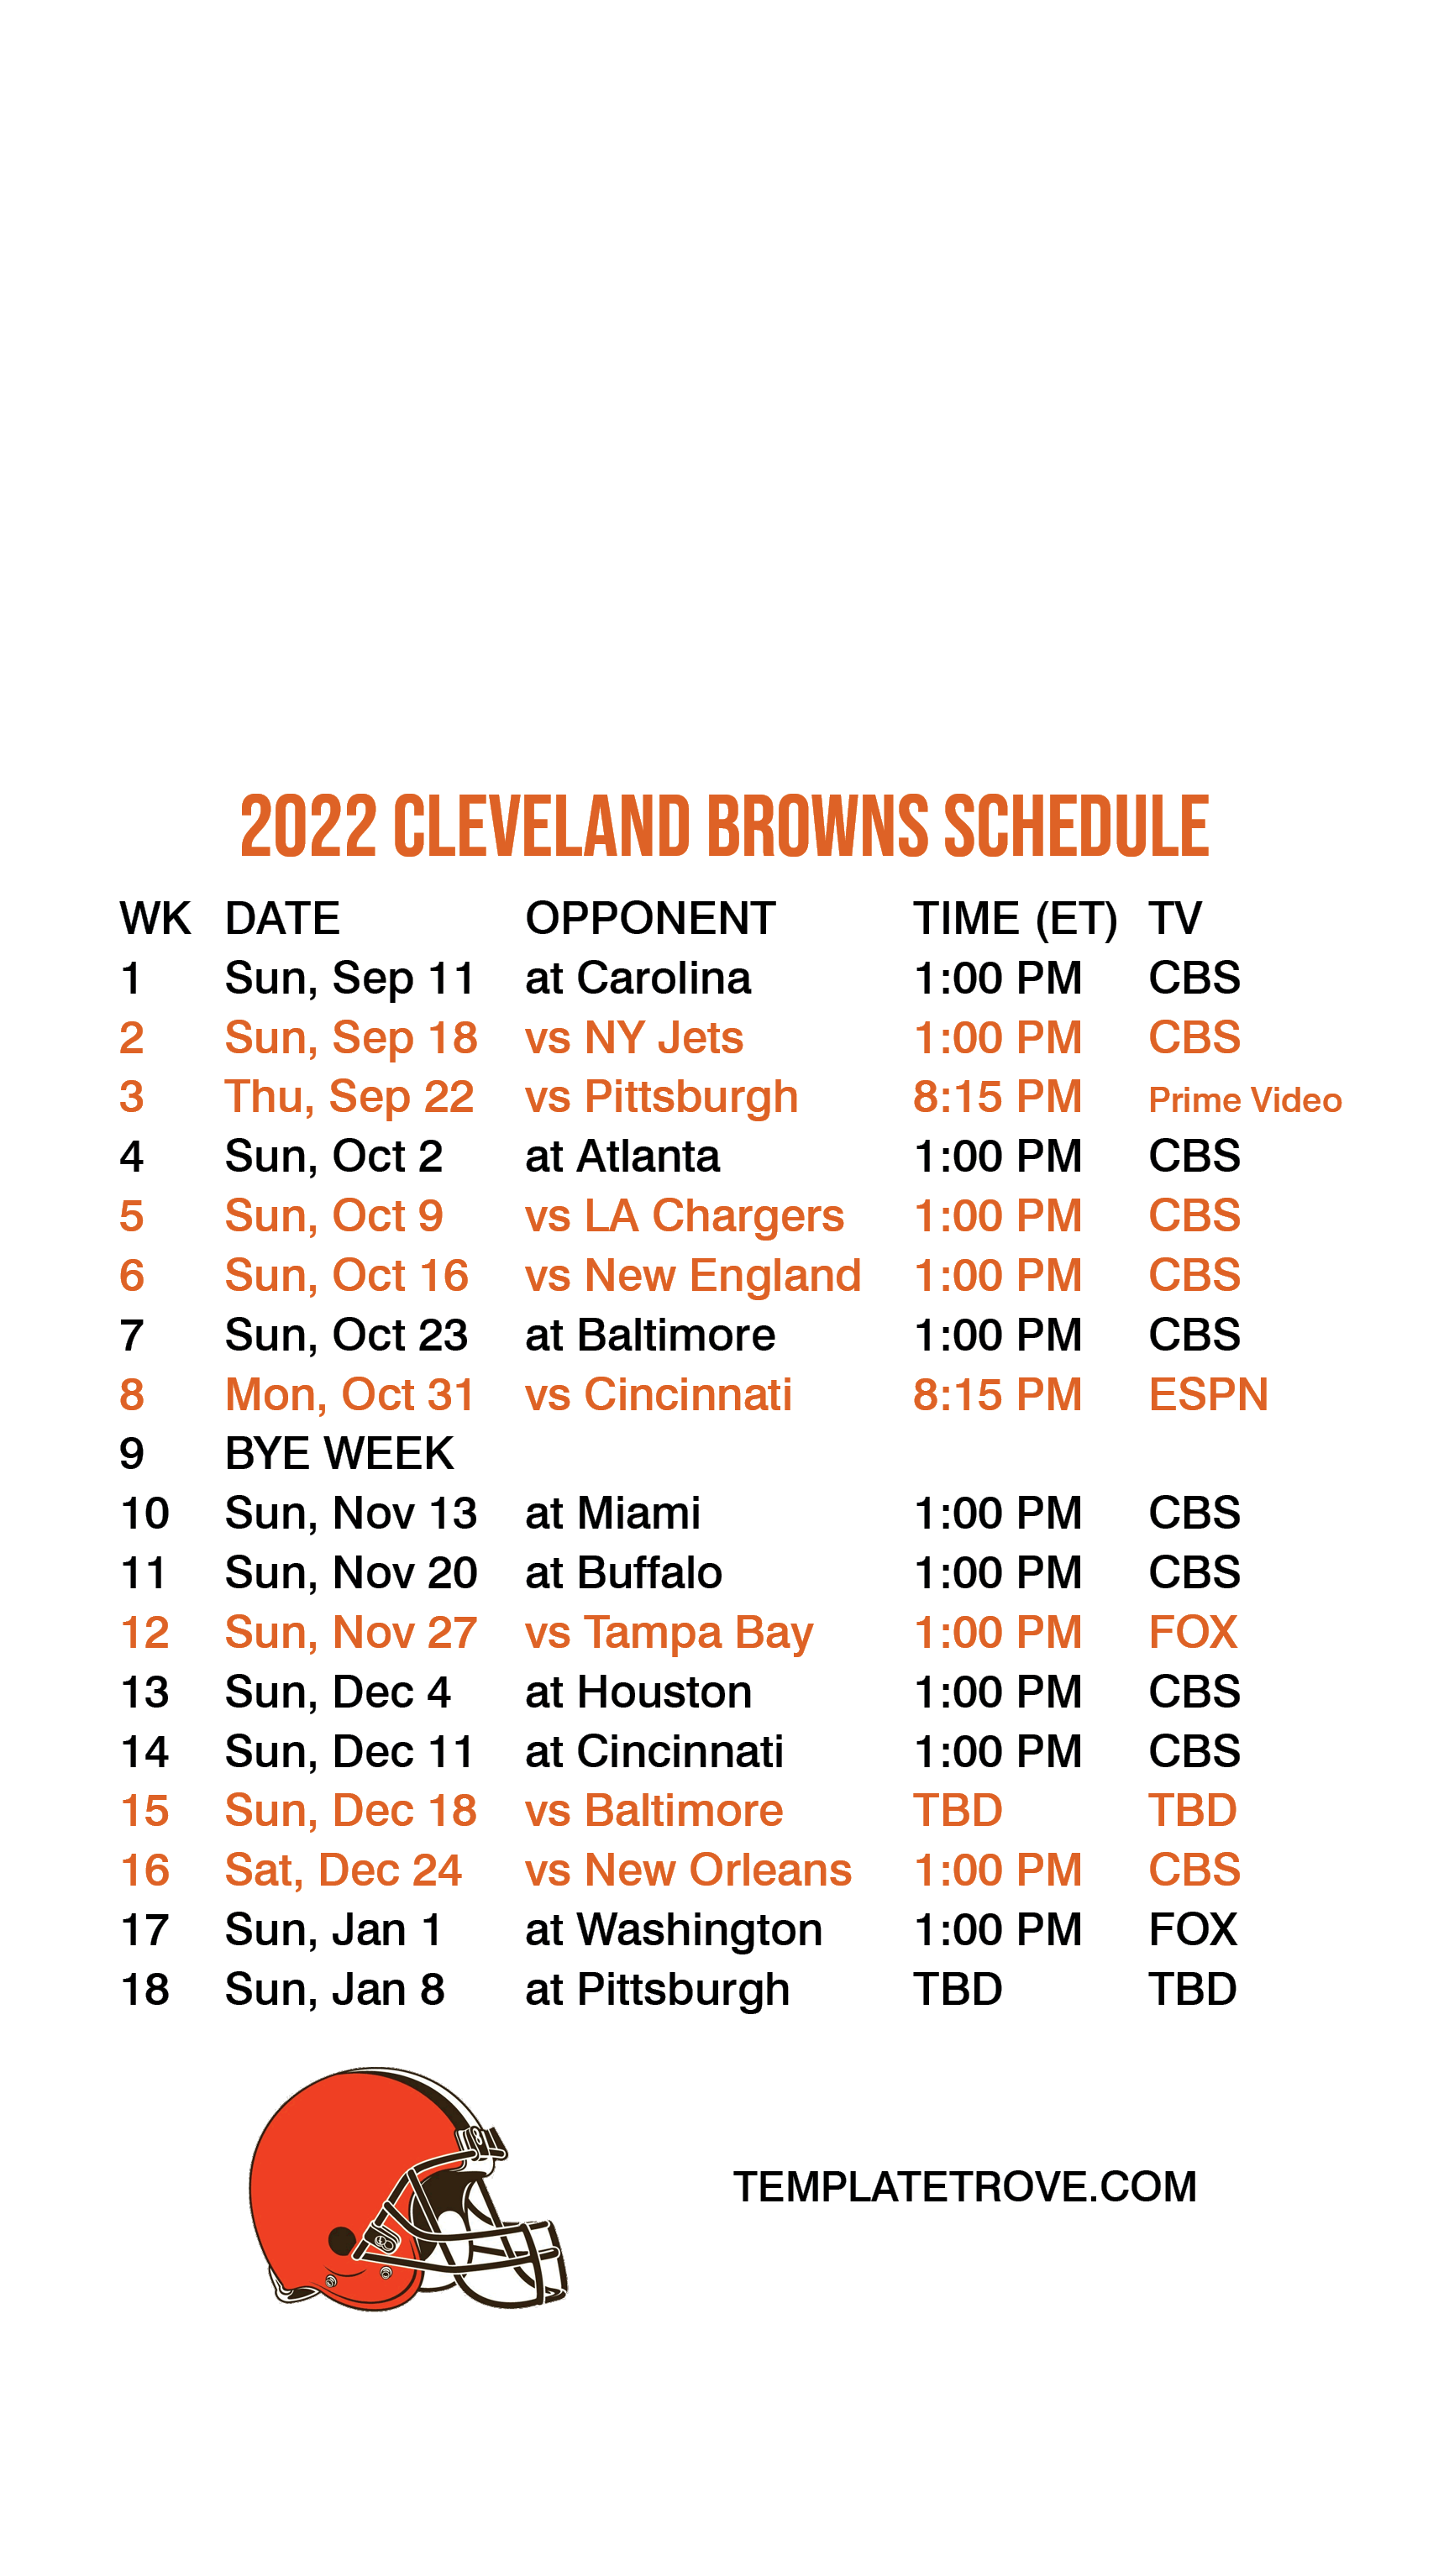 2022 2023 cleveland browns schedule